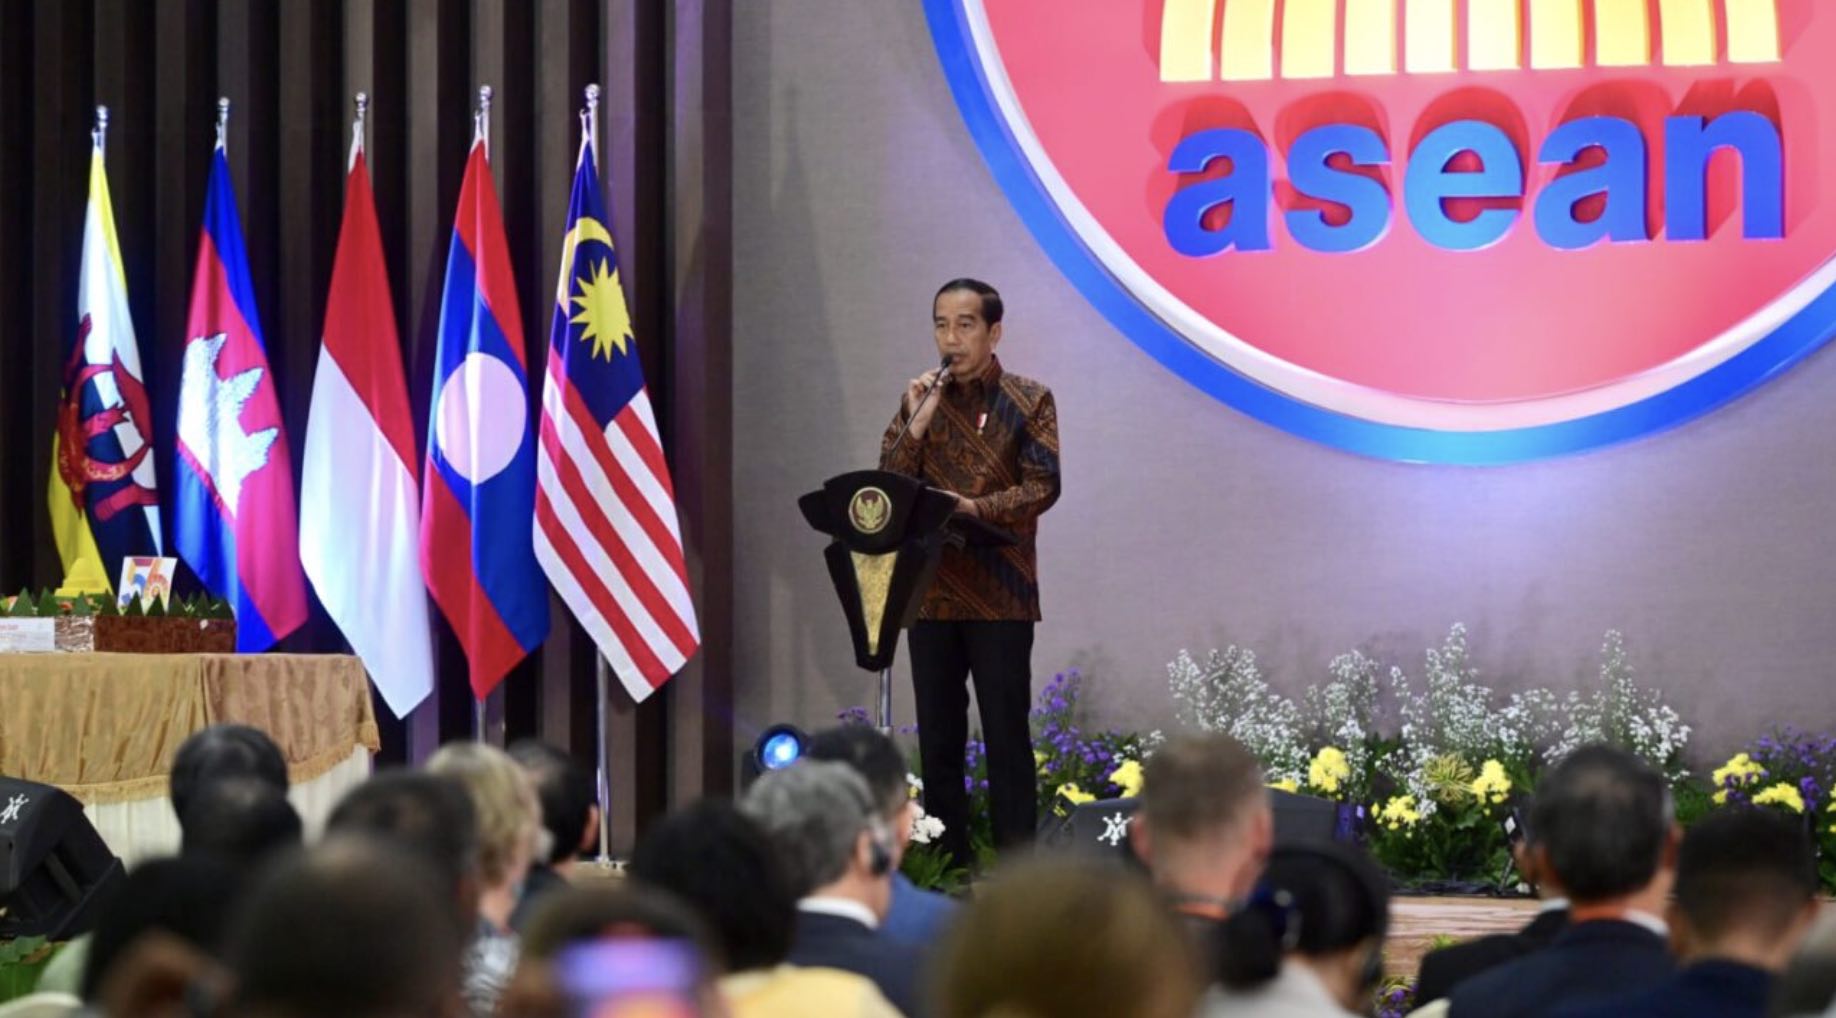 Presiden: Jadikan Asia Tenggara Kawasan Damai dan Sejahtera